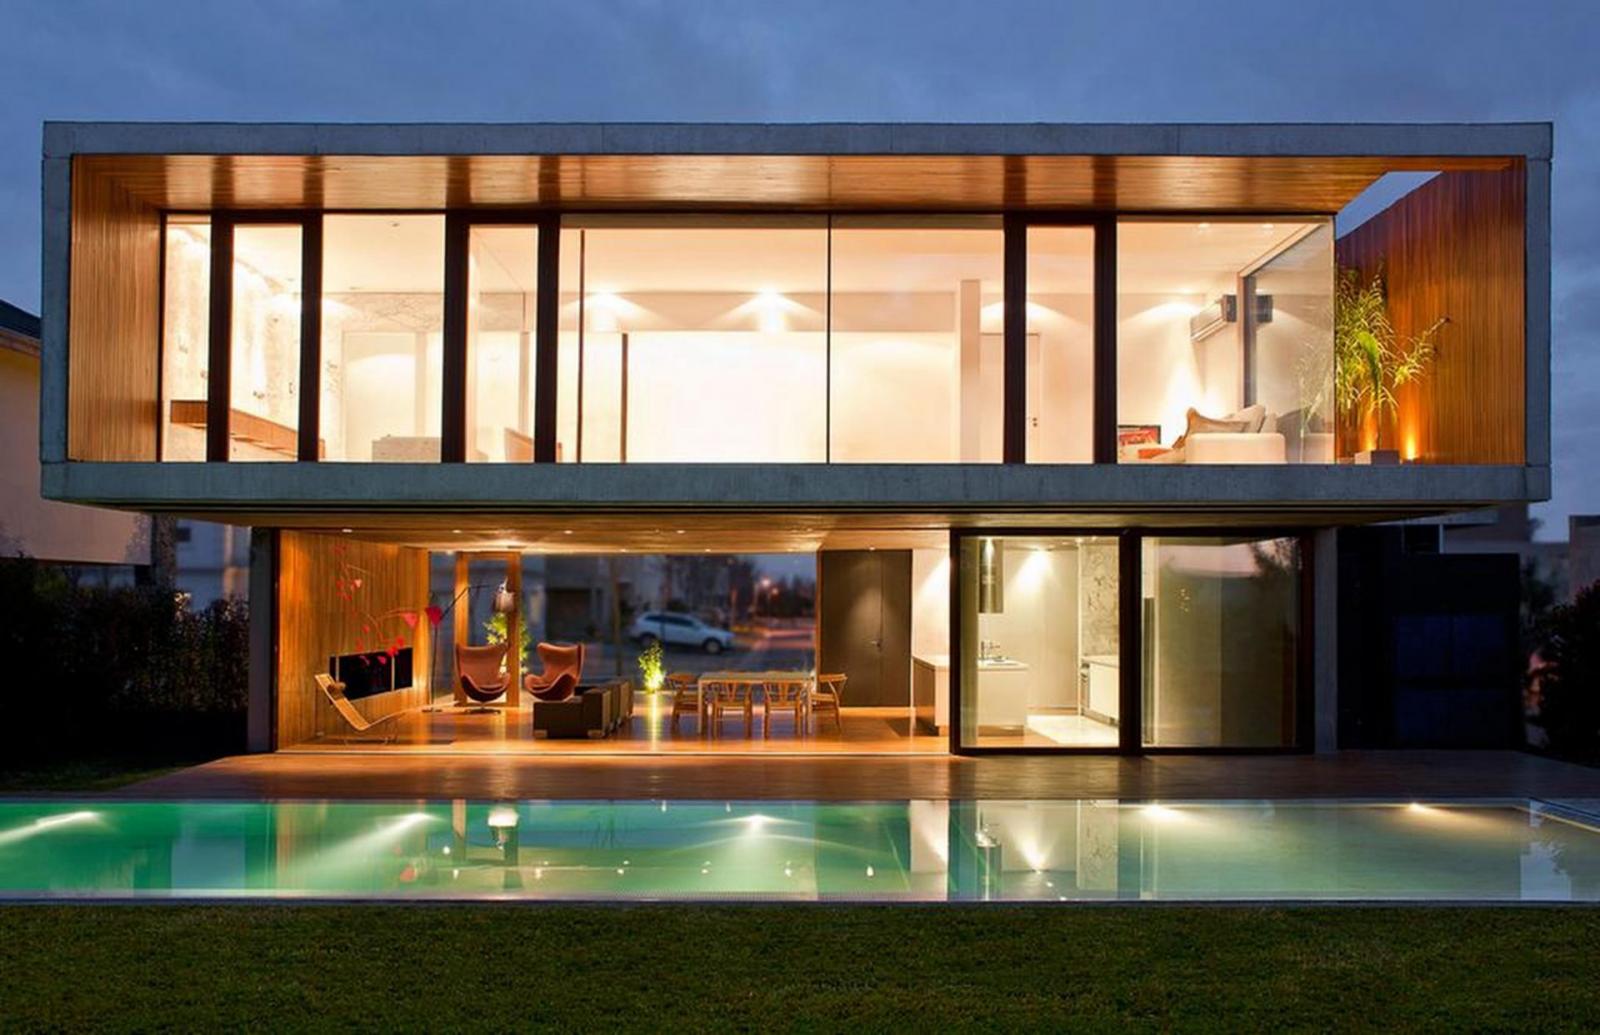 hình ảnh khung cảnh một ngôi nhà về đêm với tường kính cường lực trong suốt, bể bơi xanh mát, ánh đèn vàng